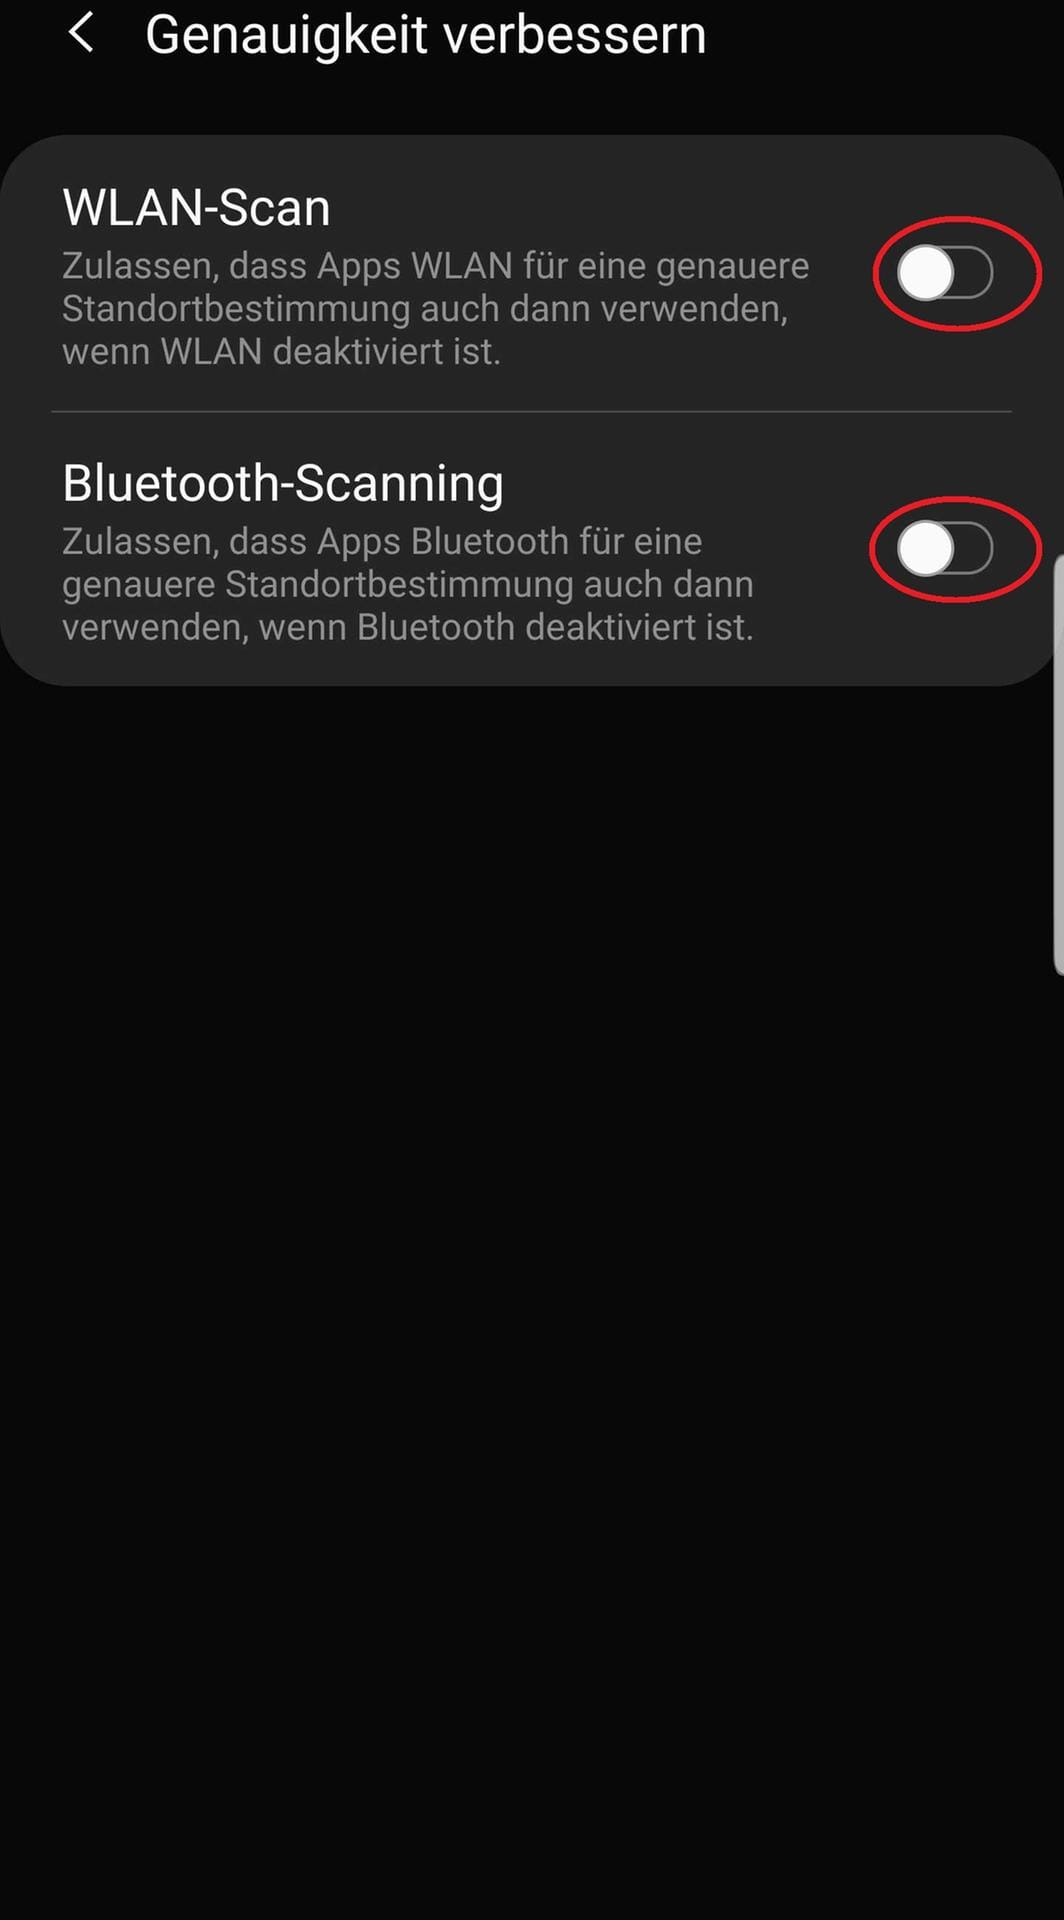 Wählen Sie anschließend sowohl W-Lan als auch Bluetooth aus, indem Sie auf die weißen Punkte klicken.